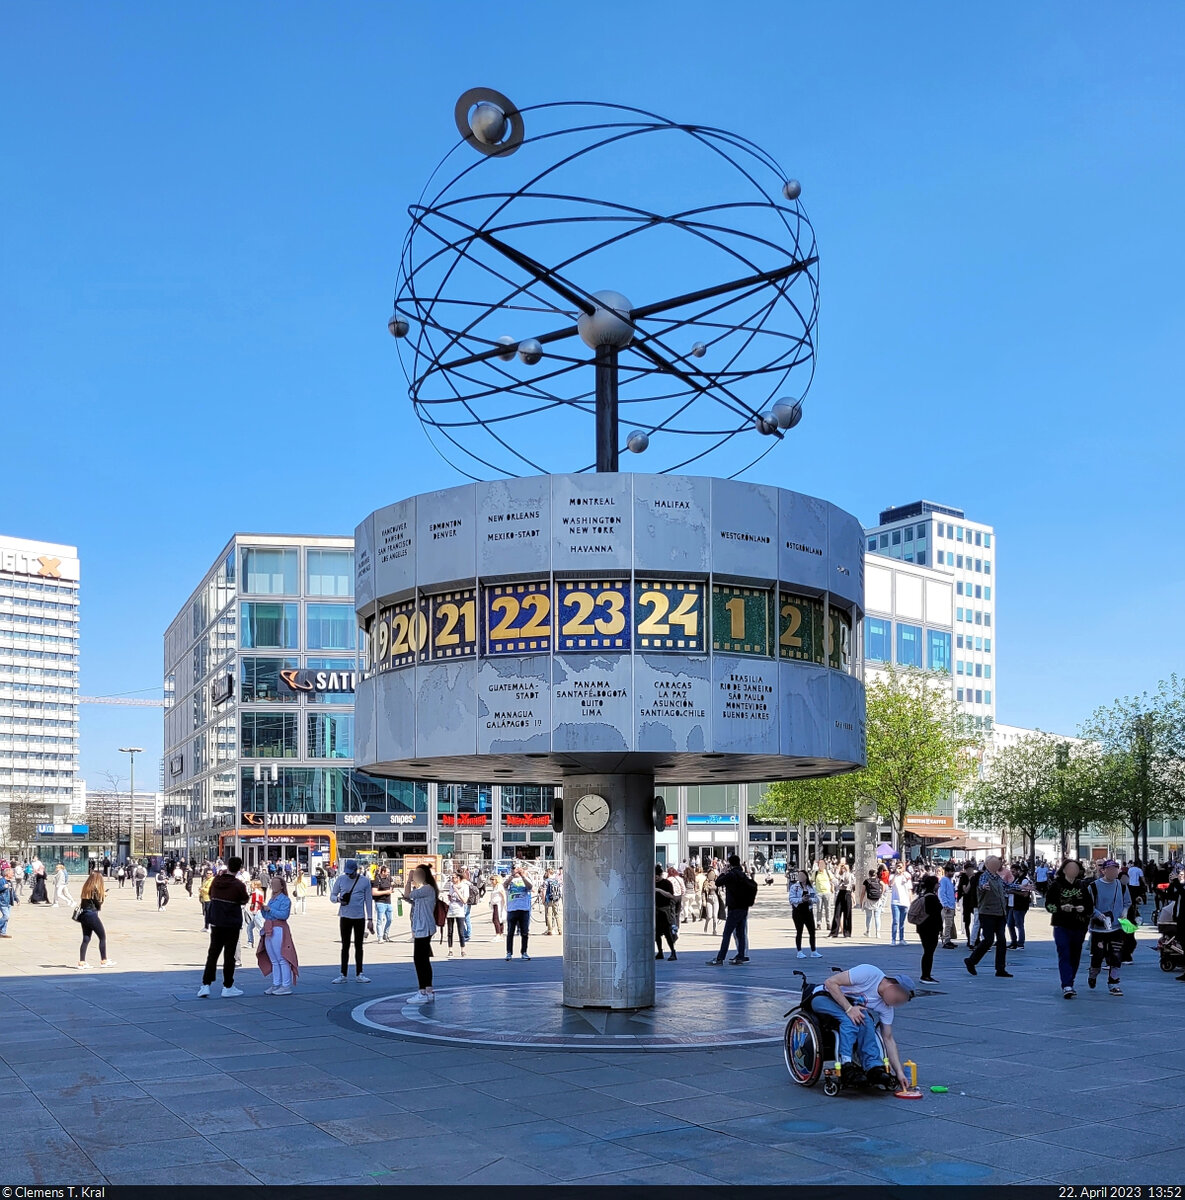 Wie sich unschwer erkennen lässt, ist die Urania-Weltzeituhr auf dem Berliner Alexanderplatz ein beliebter Treffpunkt. Seit 2015 steht sie unter Denkmalschutz.

🕓 22.4.2023 | 13:52 Uhr